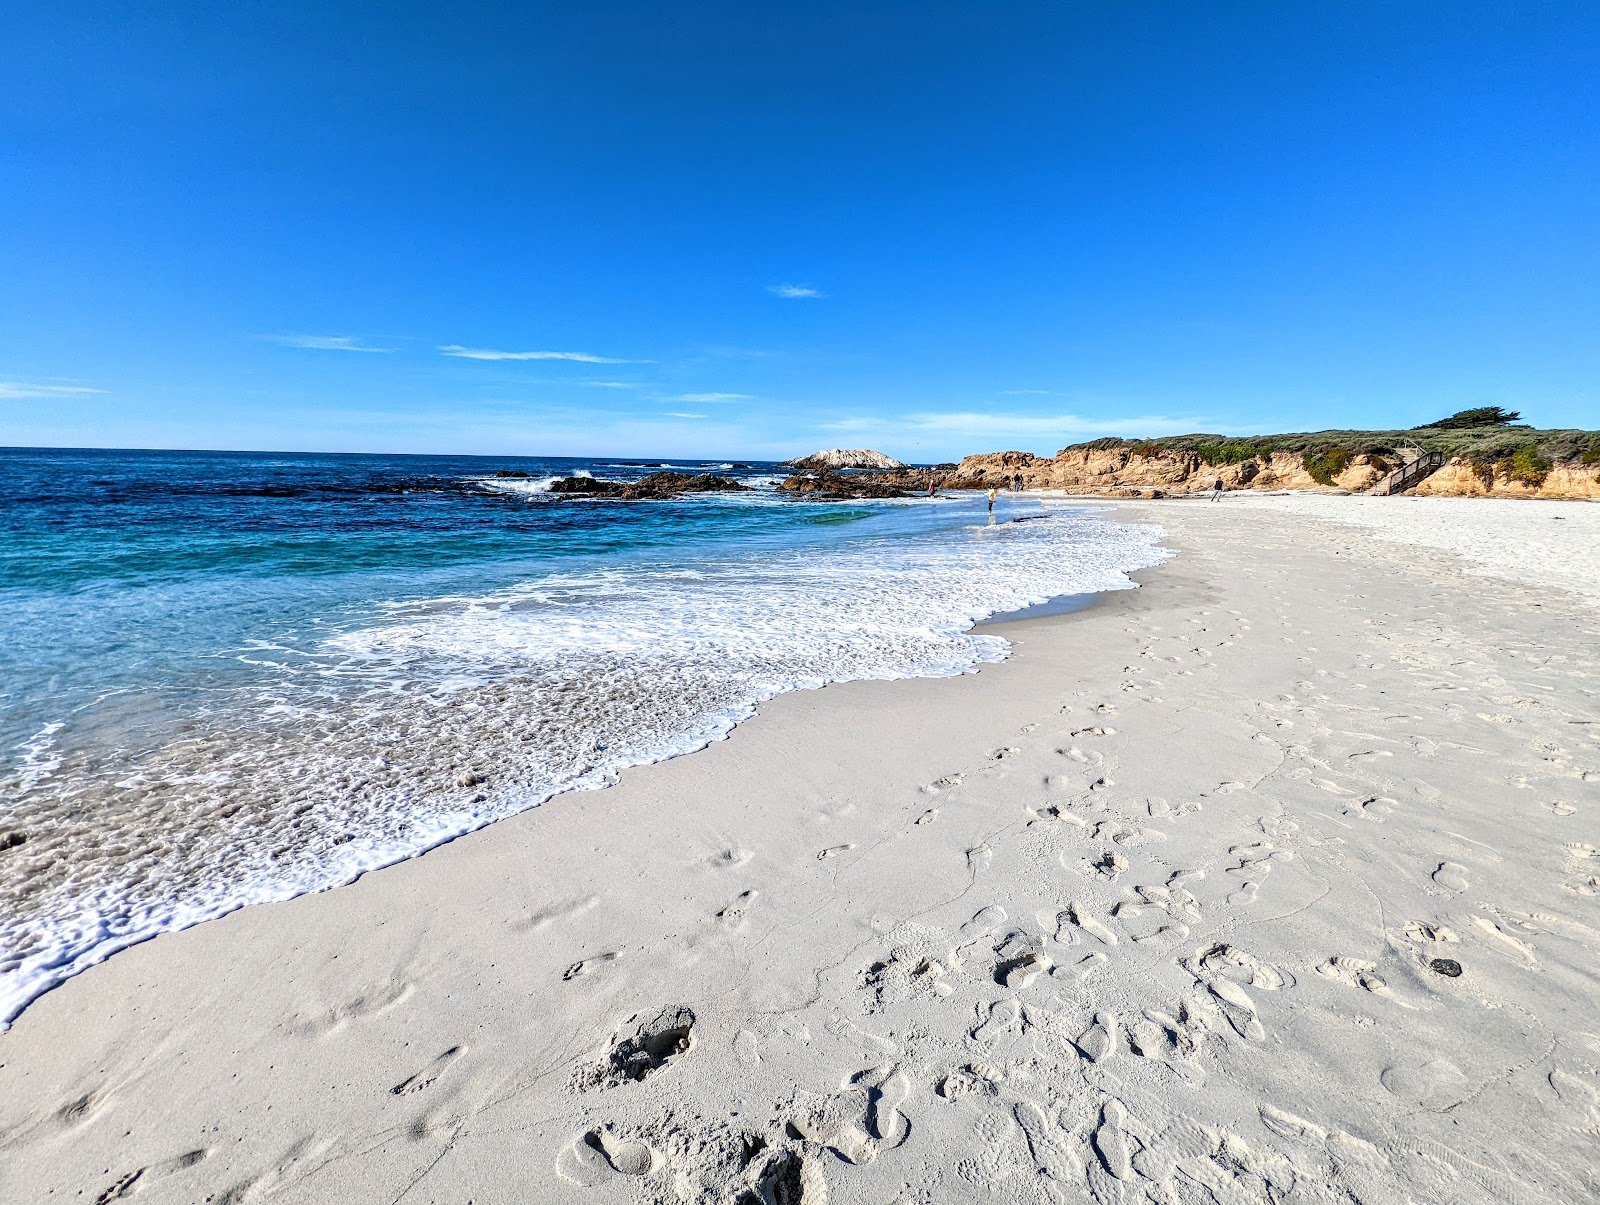 Fotografie cu Seal Rock Beach cu o suprafață de nisip alb